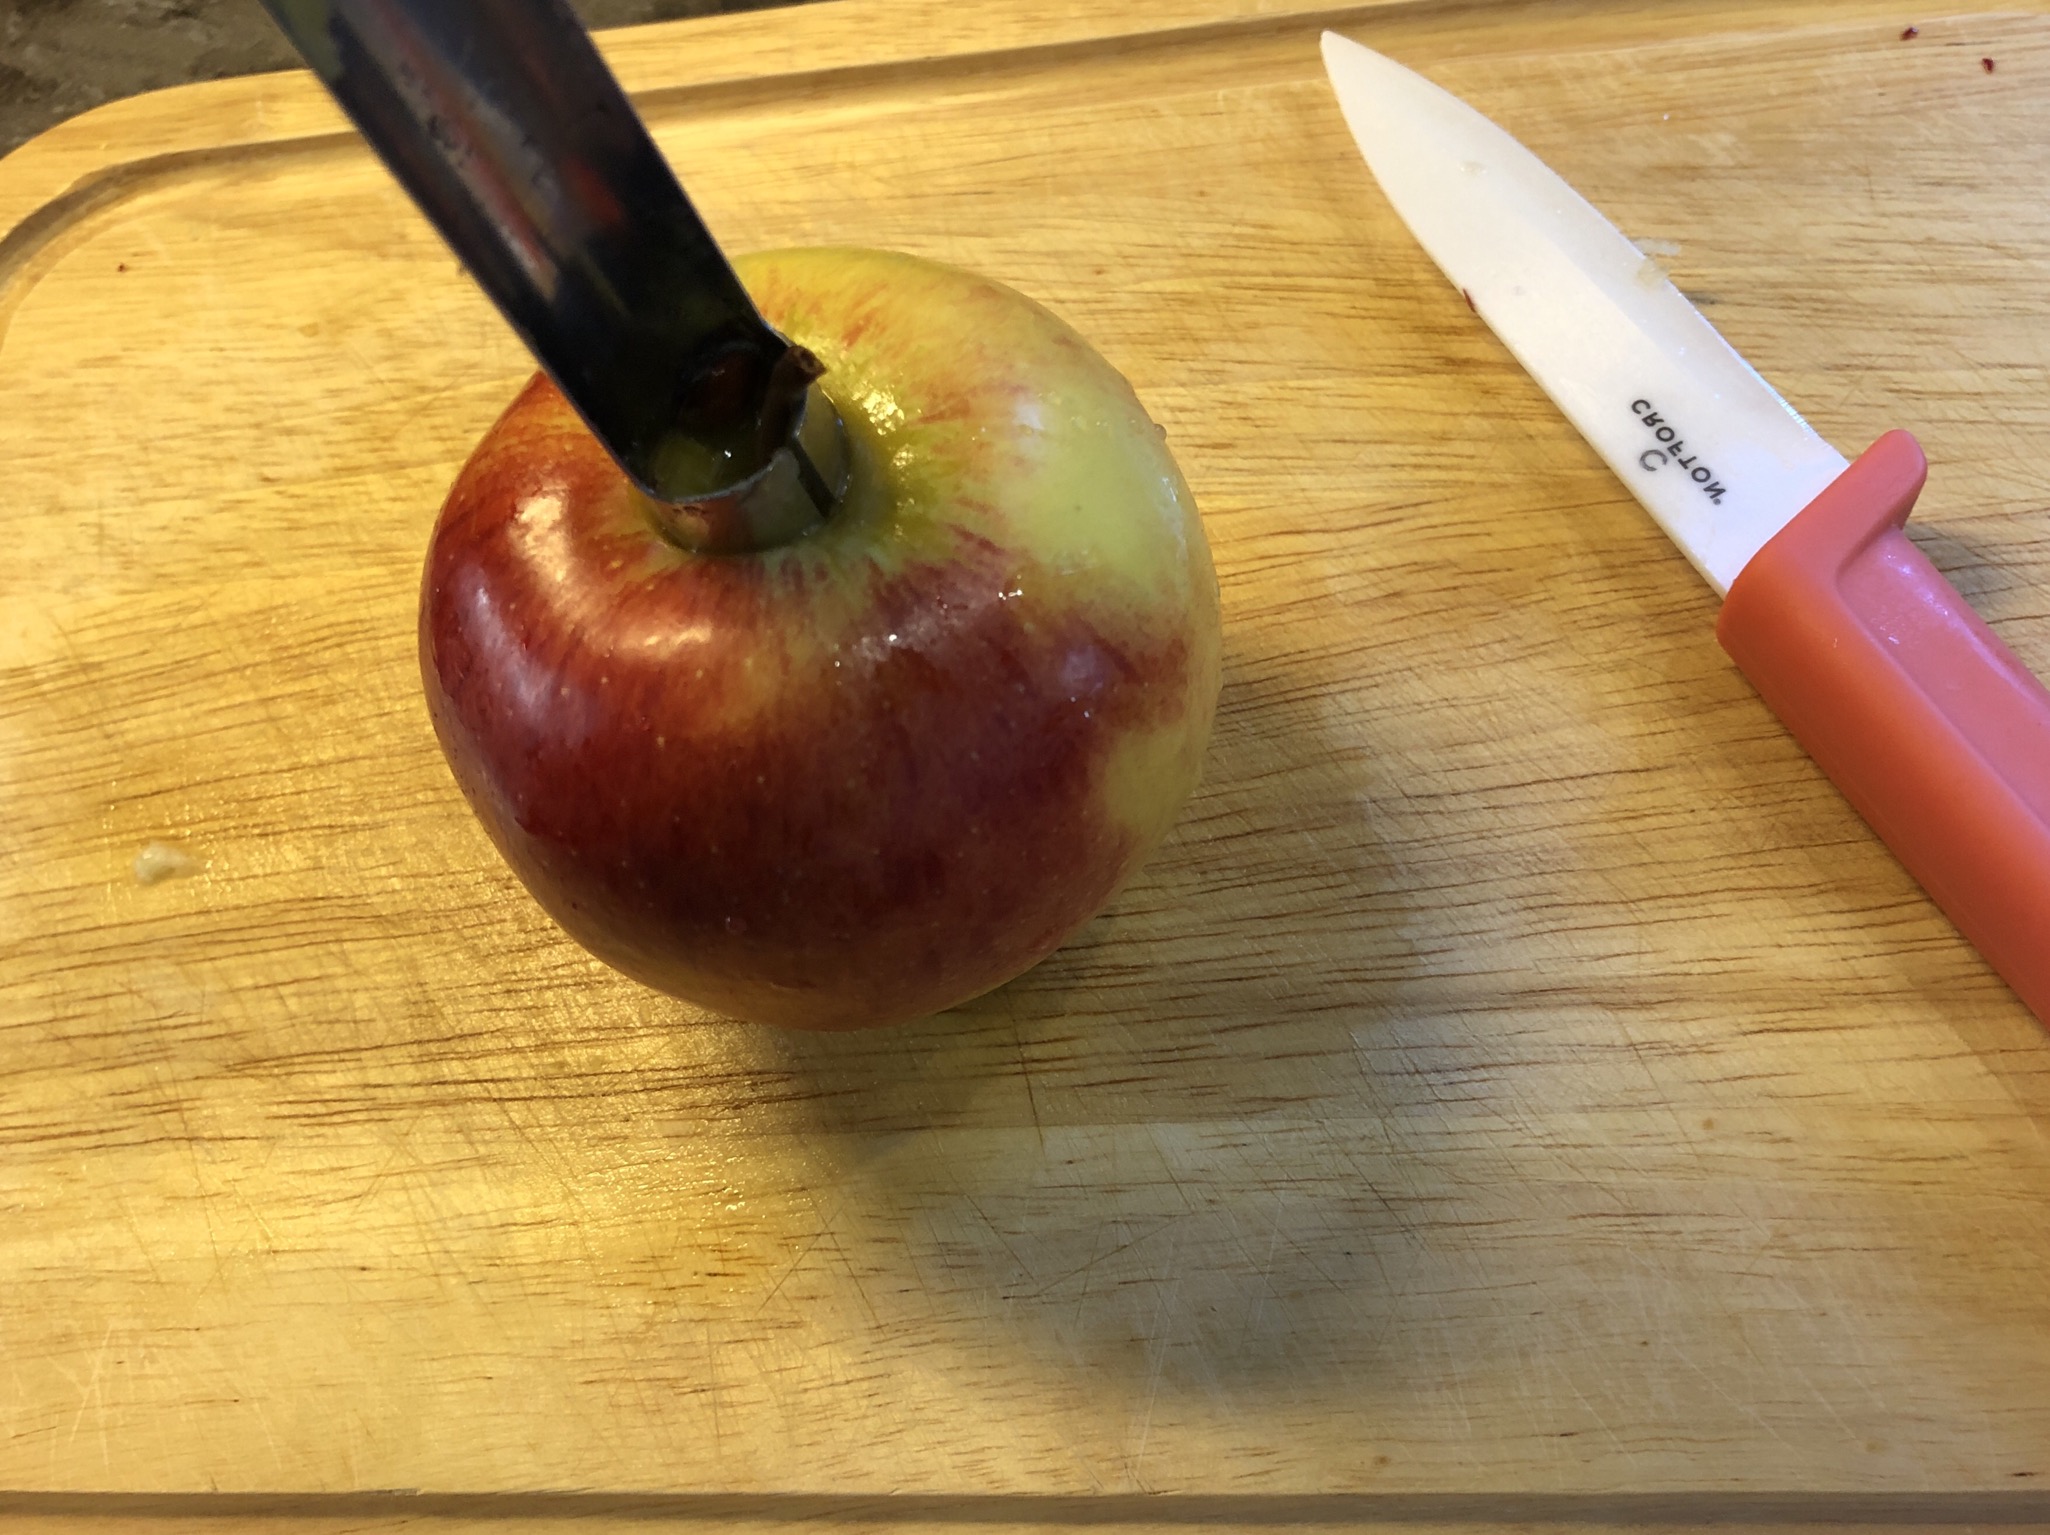 Bild zum Schritt 1 für das Bastel- und DIY-Abenteuer für Kinder: 'Als erstes wird der Apfel entkernt. Dazu mit dem Apfel-Entkerner...'